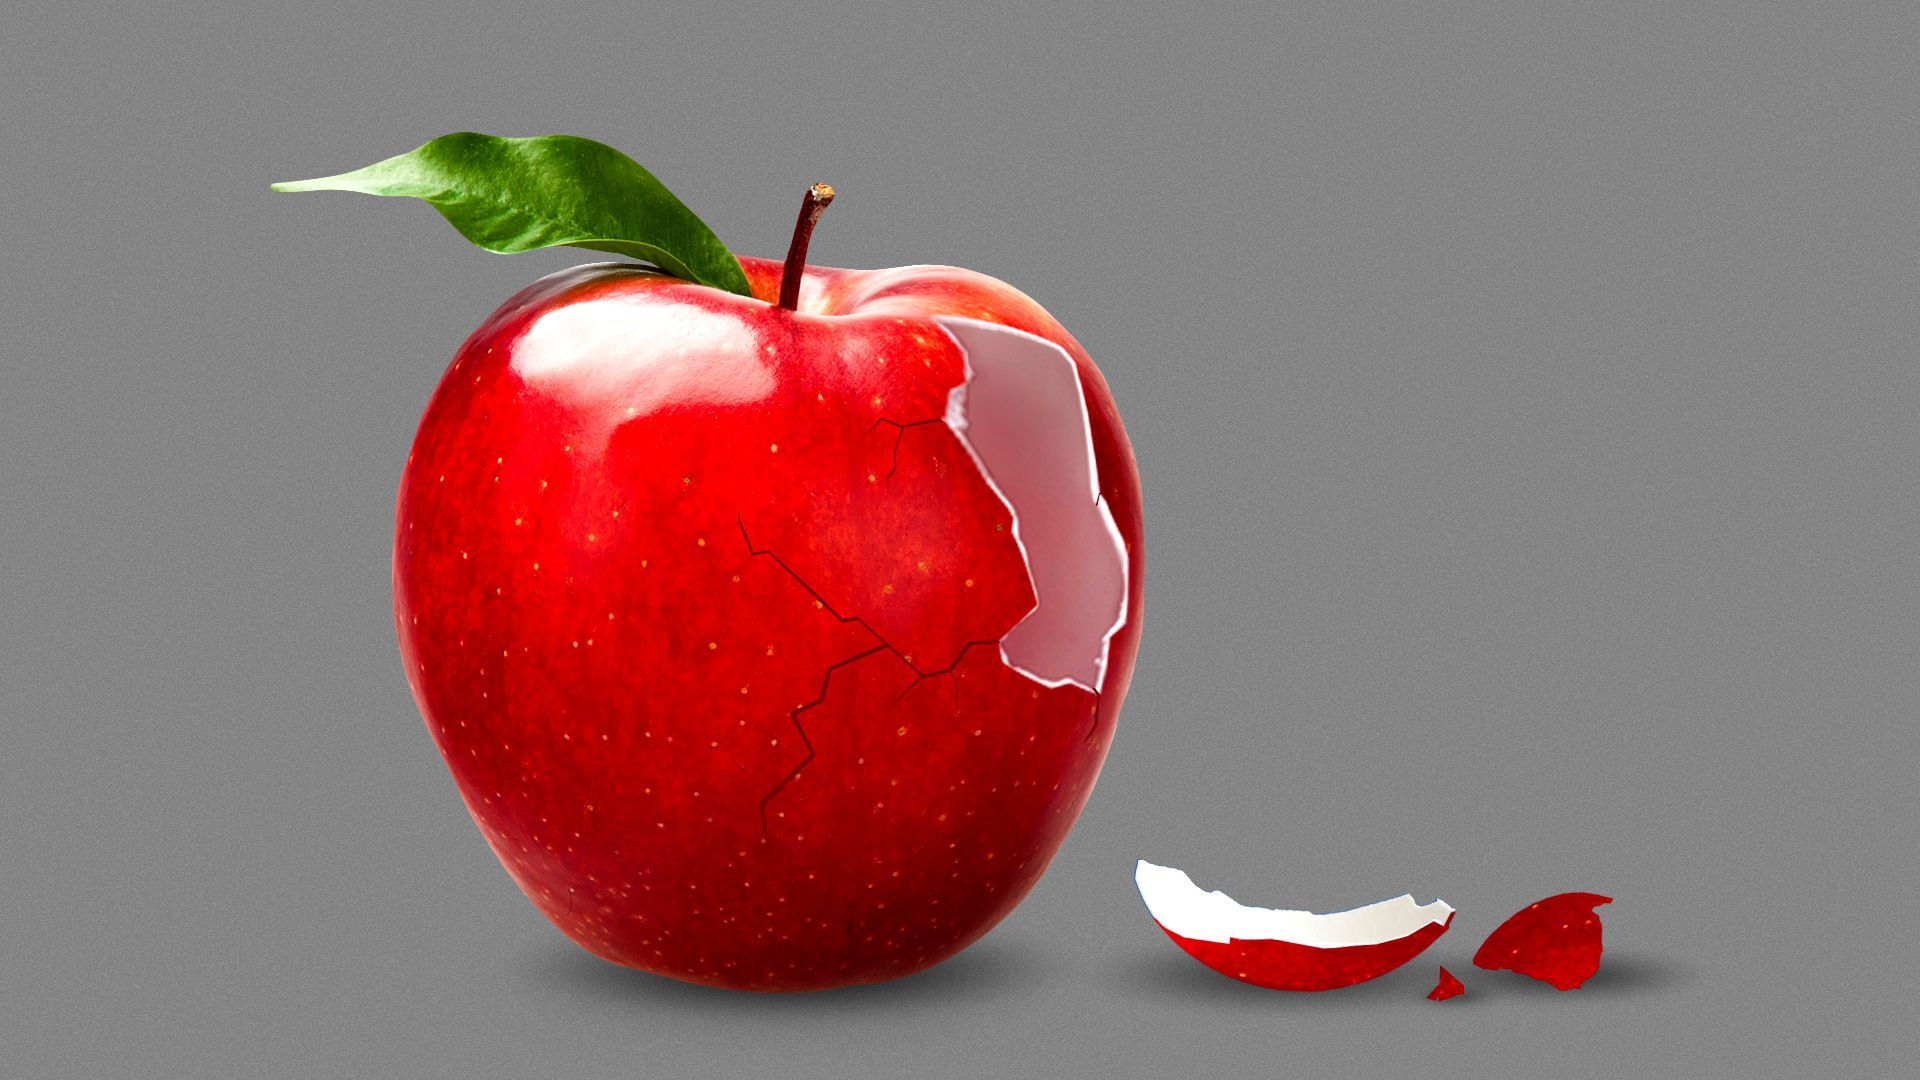 Illustration of an apple cracking like an egg